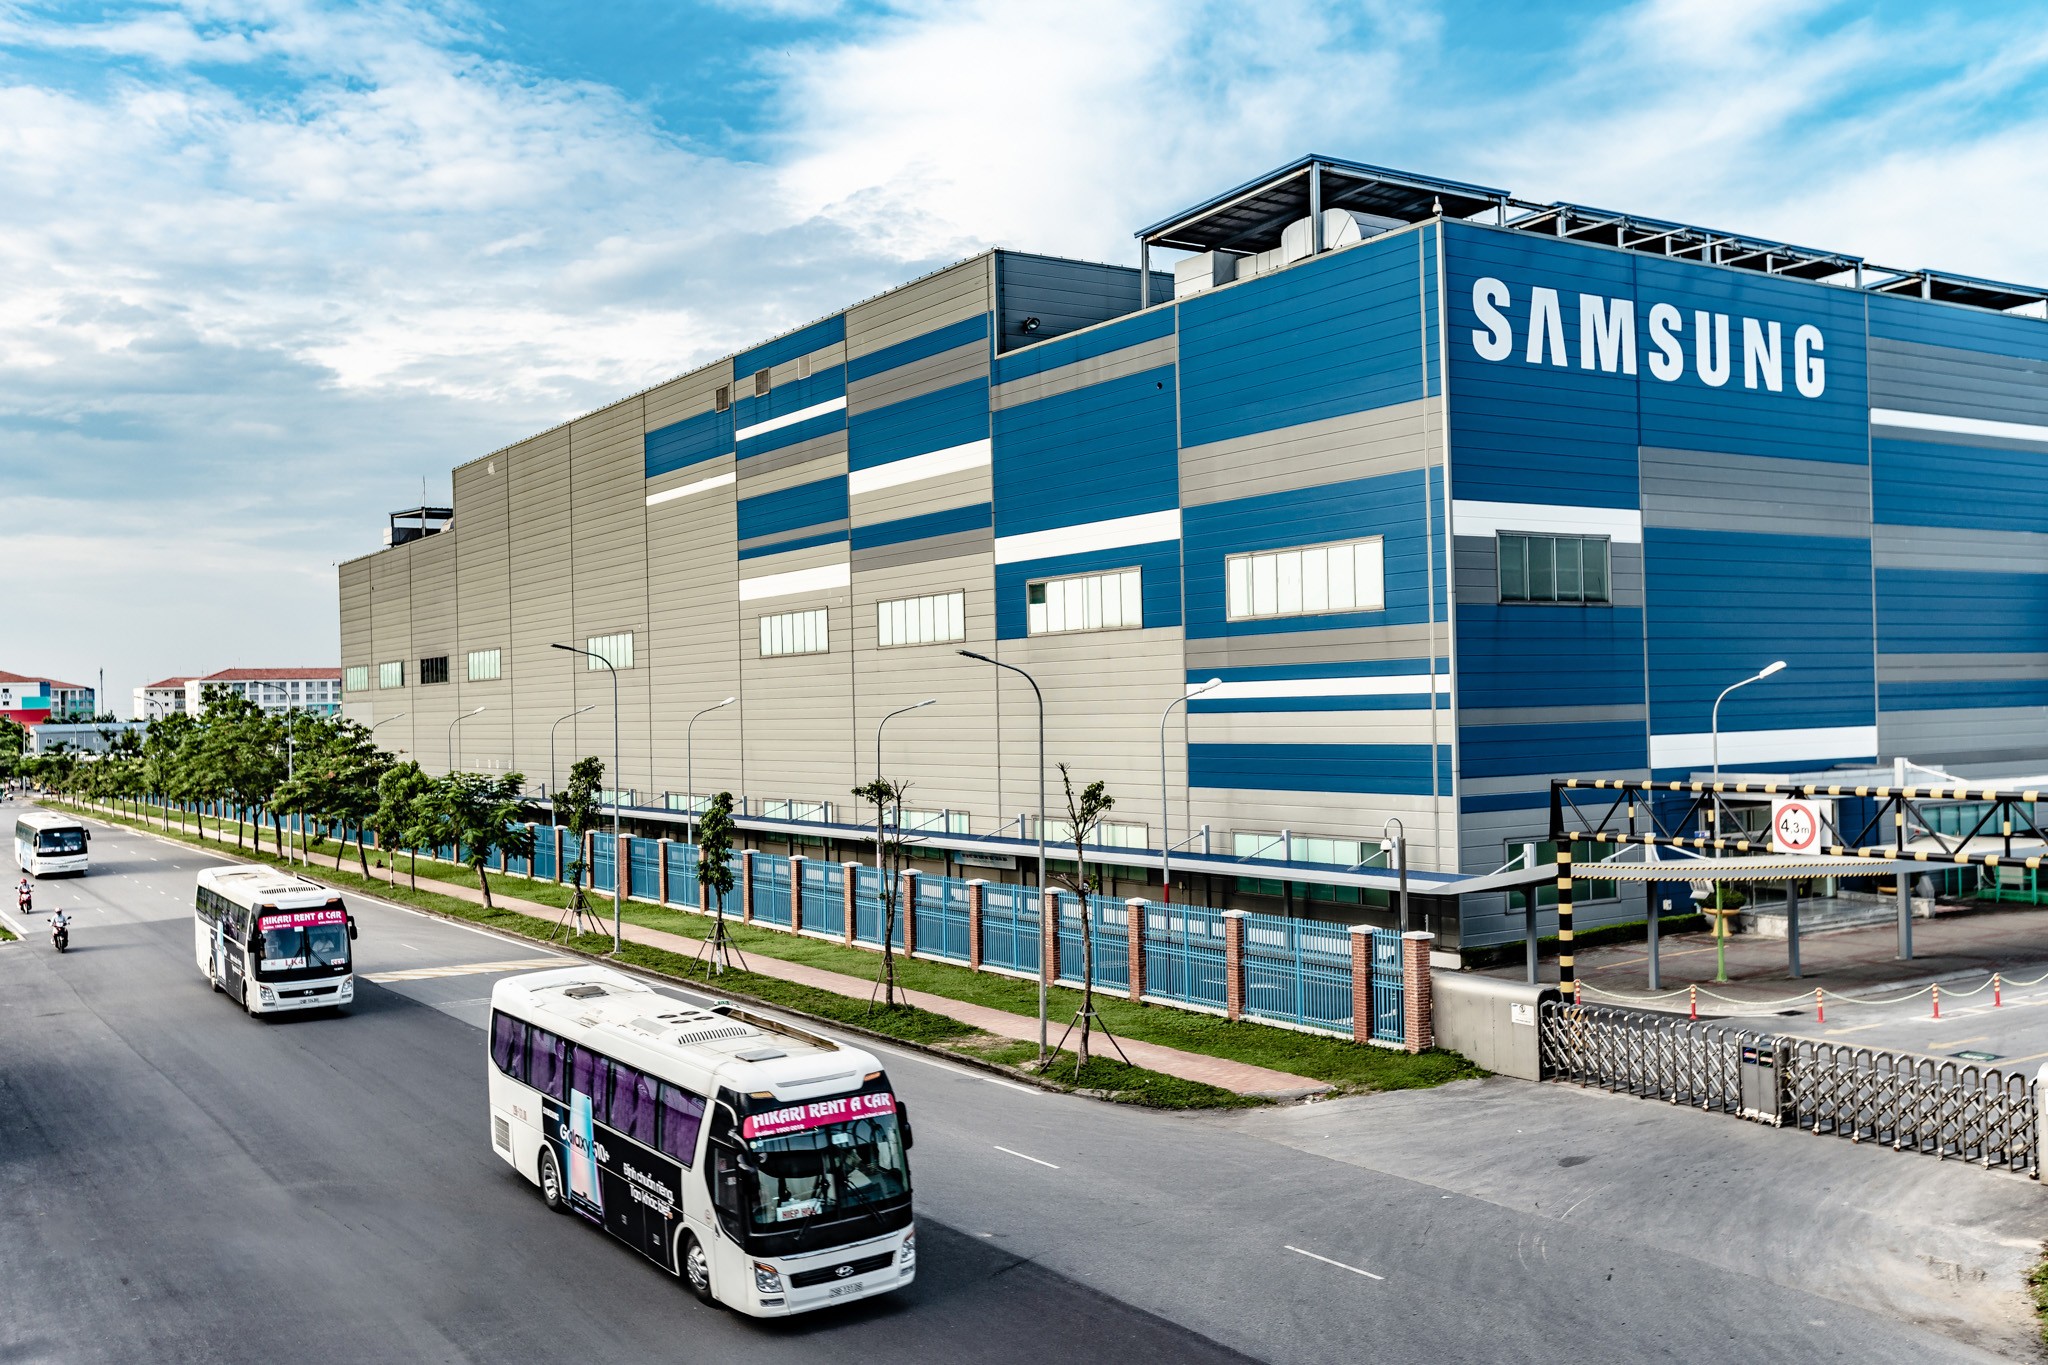 
Cho đến thời điểm hiện tại, Samsung vẫn luôn là nhà đầu tư nước ngoài lớn nhất ở Việt Nam với 5 nhà máy ở 3 tổ hợp công nghệ cao ở Bắc Ninh, Thái Nguyên, TP. Hồ Chí Minh
